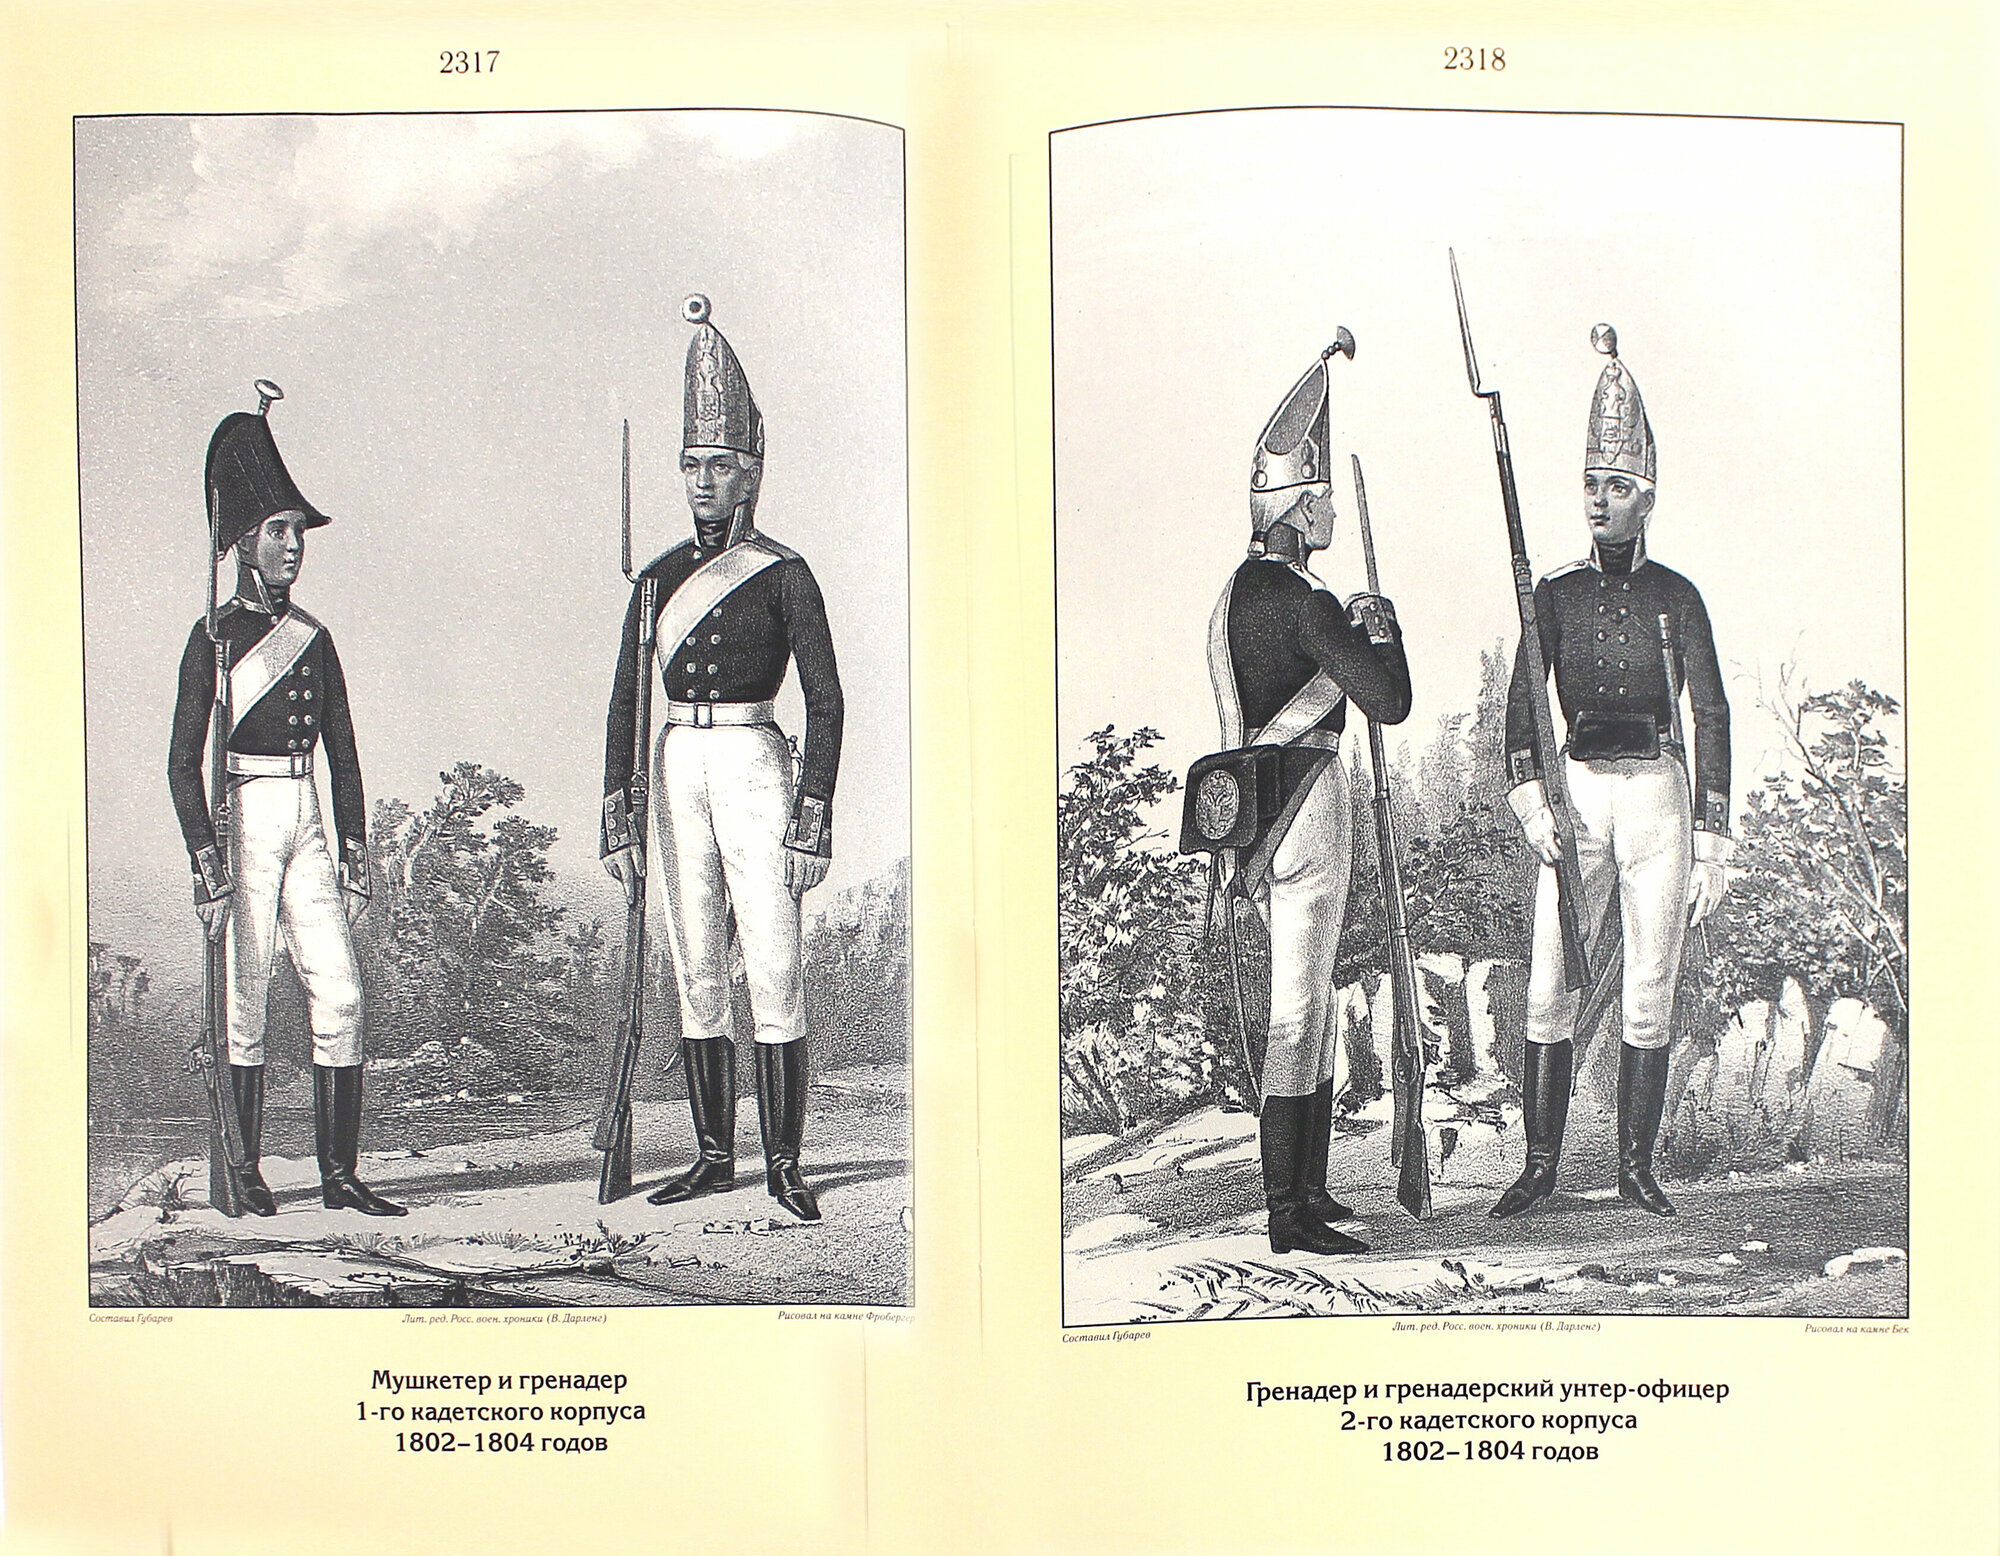 Историческое описание одежды и вооружения российских войск. Часть 13 - фото №9